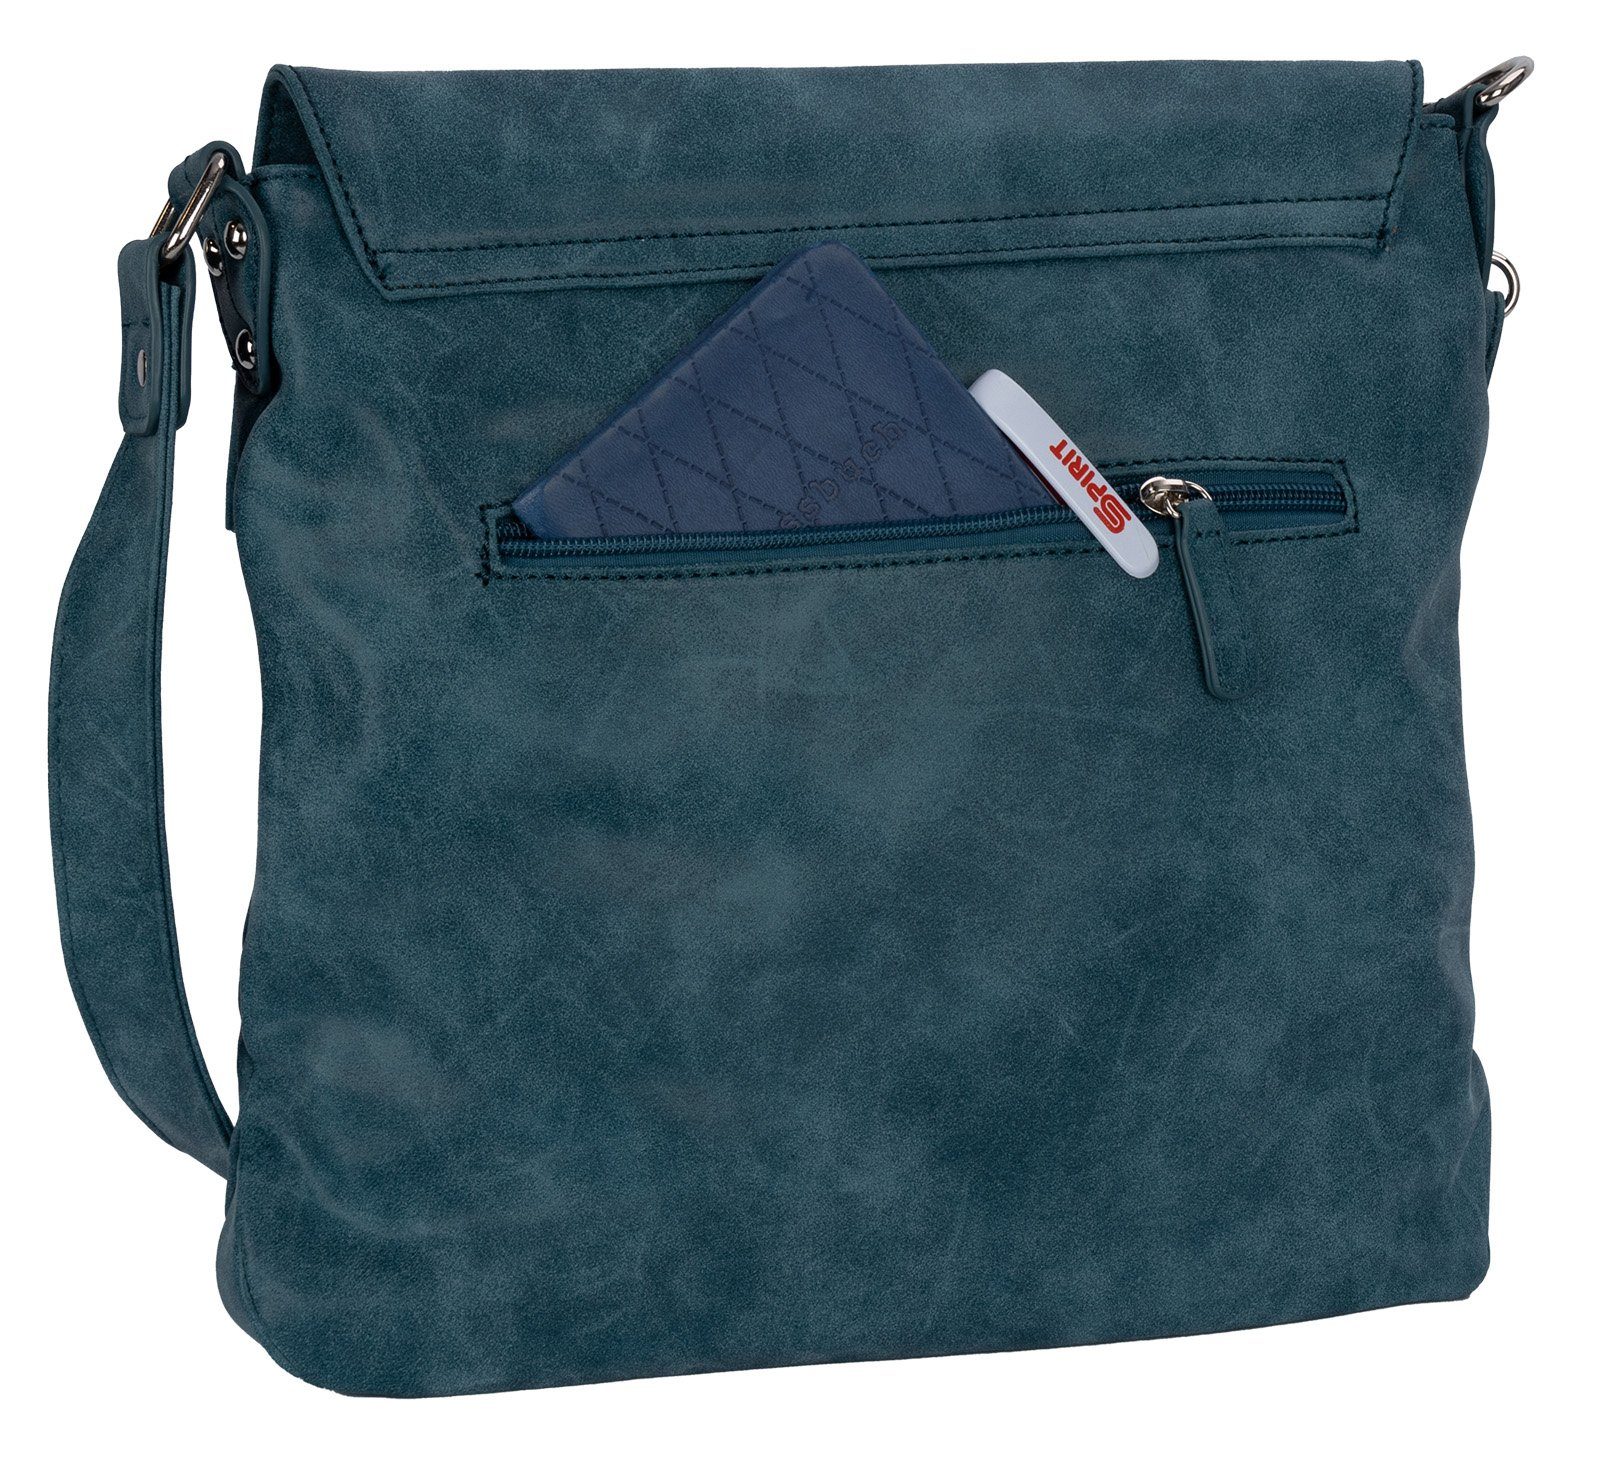 BAG STREET Schlüsseltasche Bag Street BLAU Damentasche als Handtasche Schultertasche, tragbar T0103, Umhängetasche Umhängetasche Schultertasche